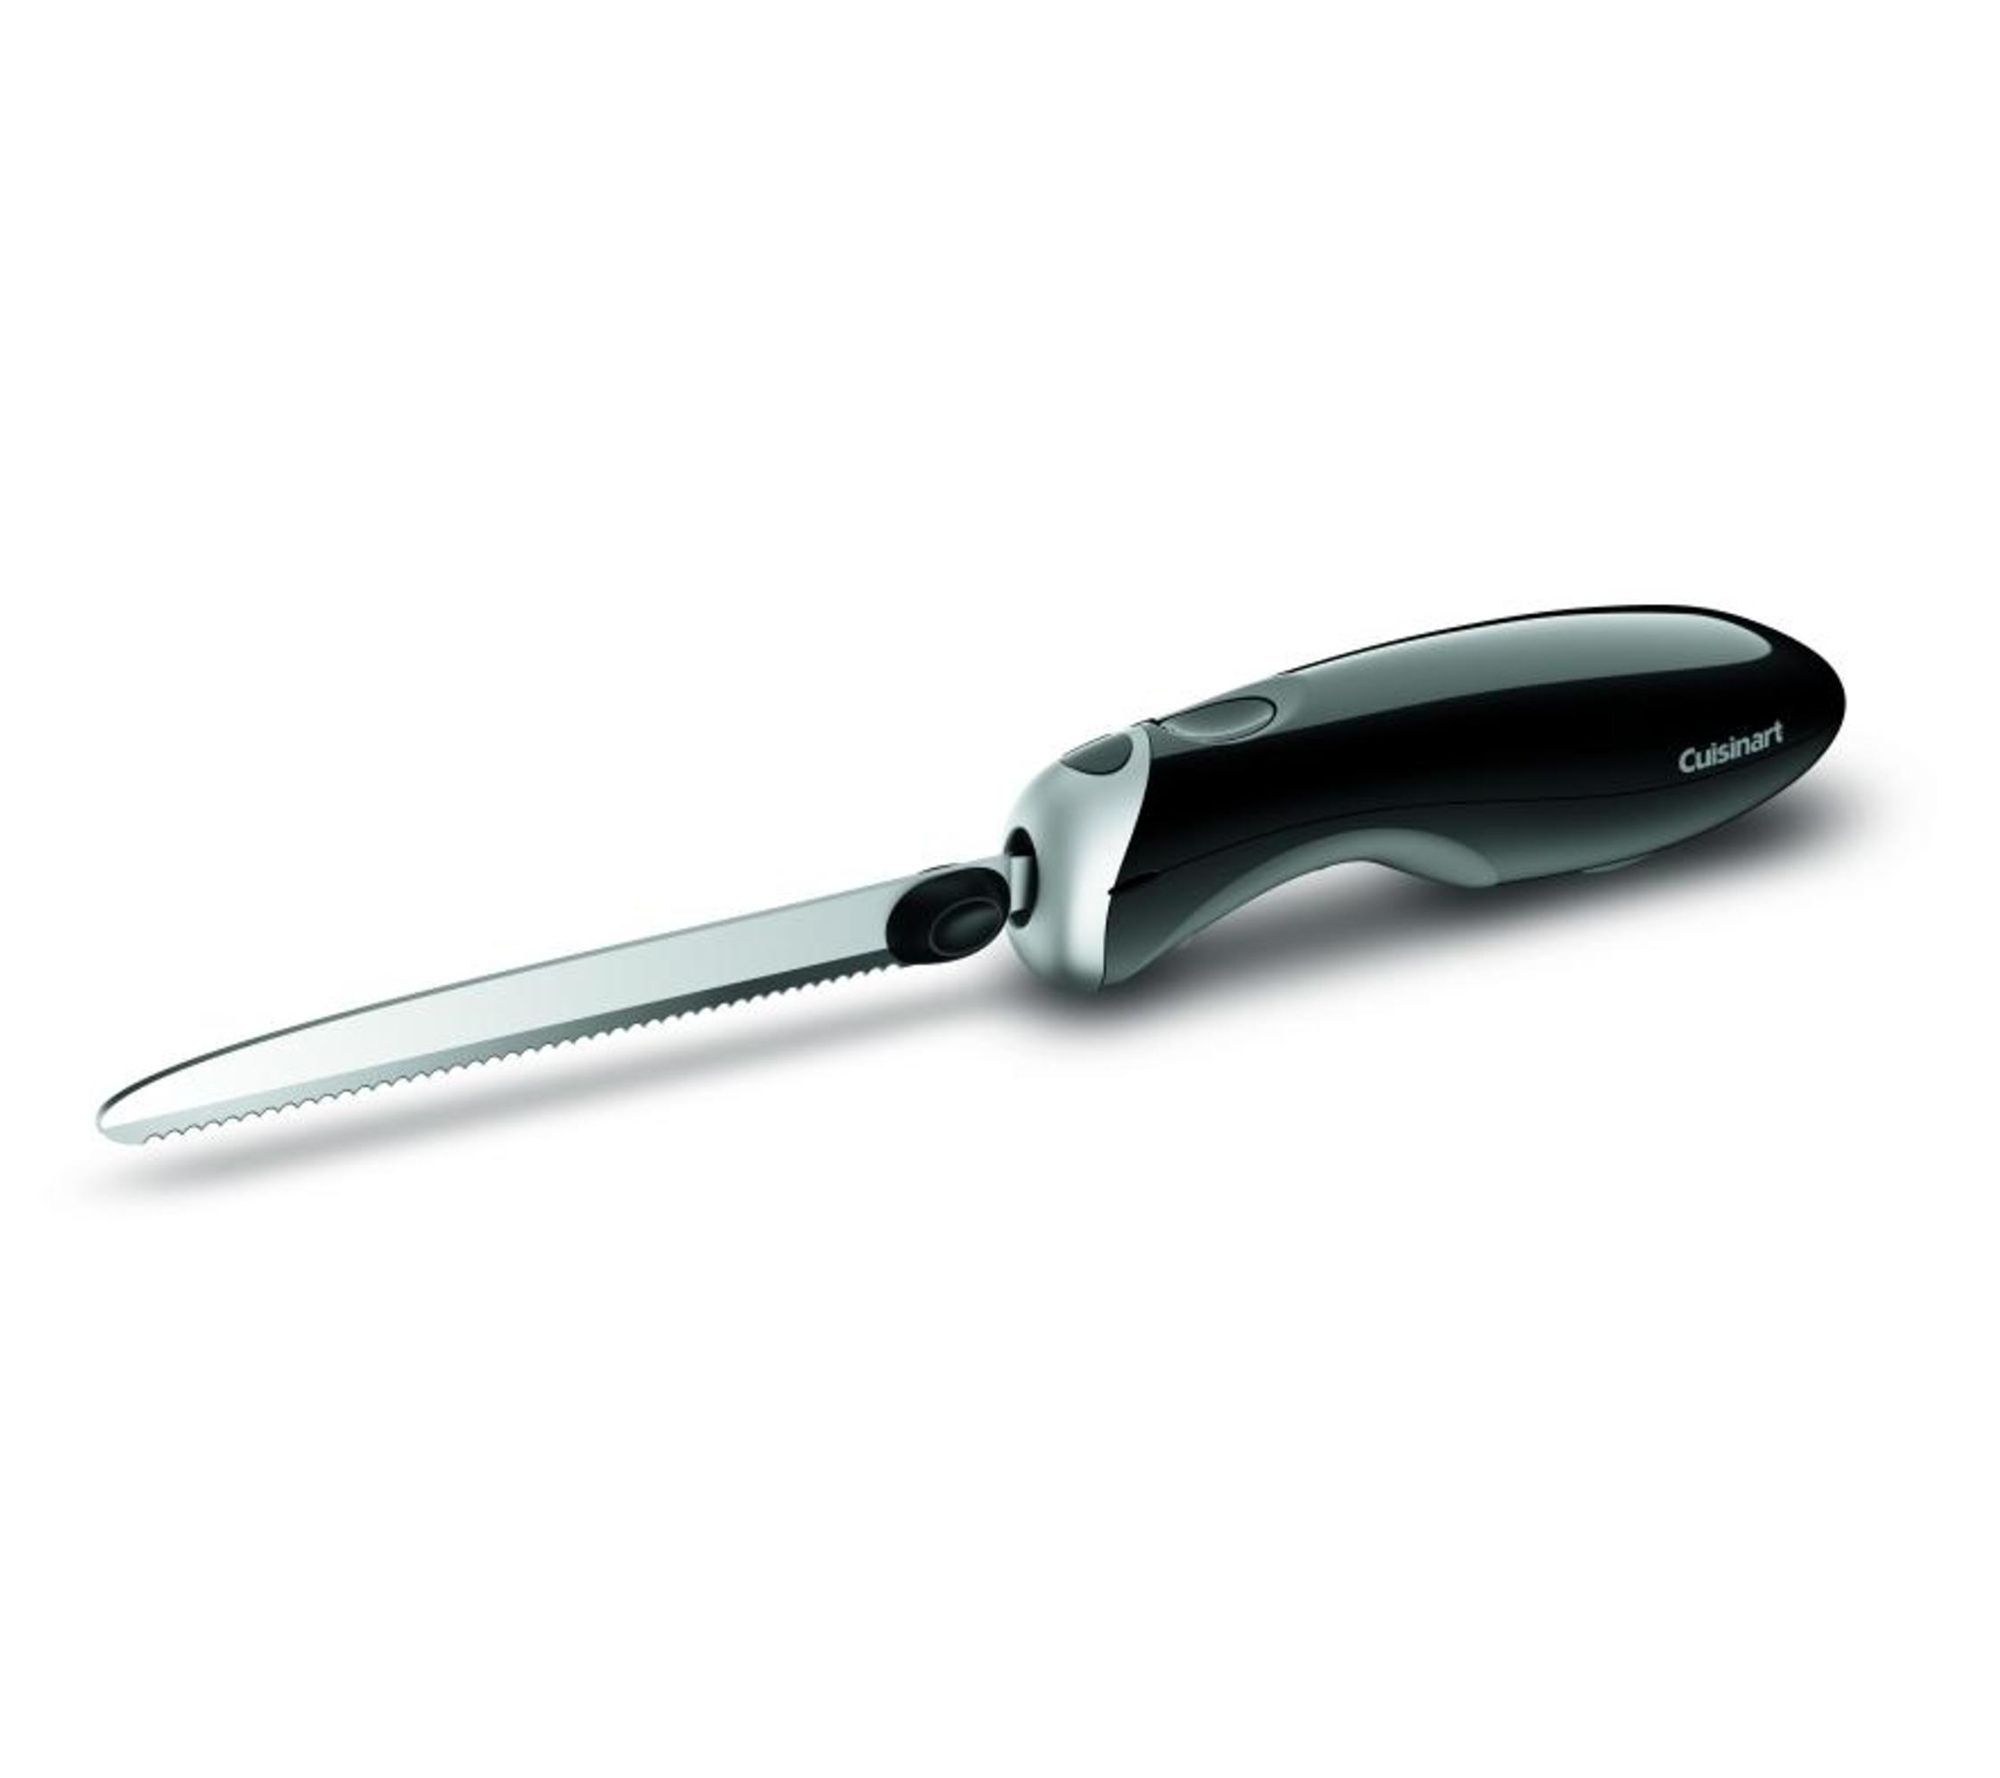 Brentwood Electric Knife Sharpener : Target